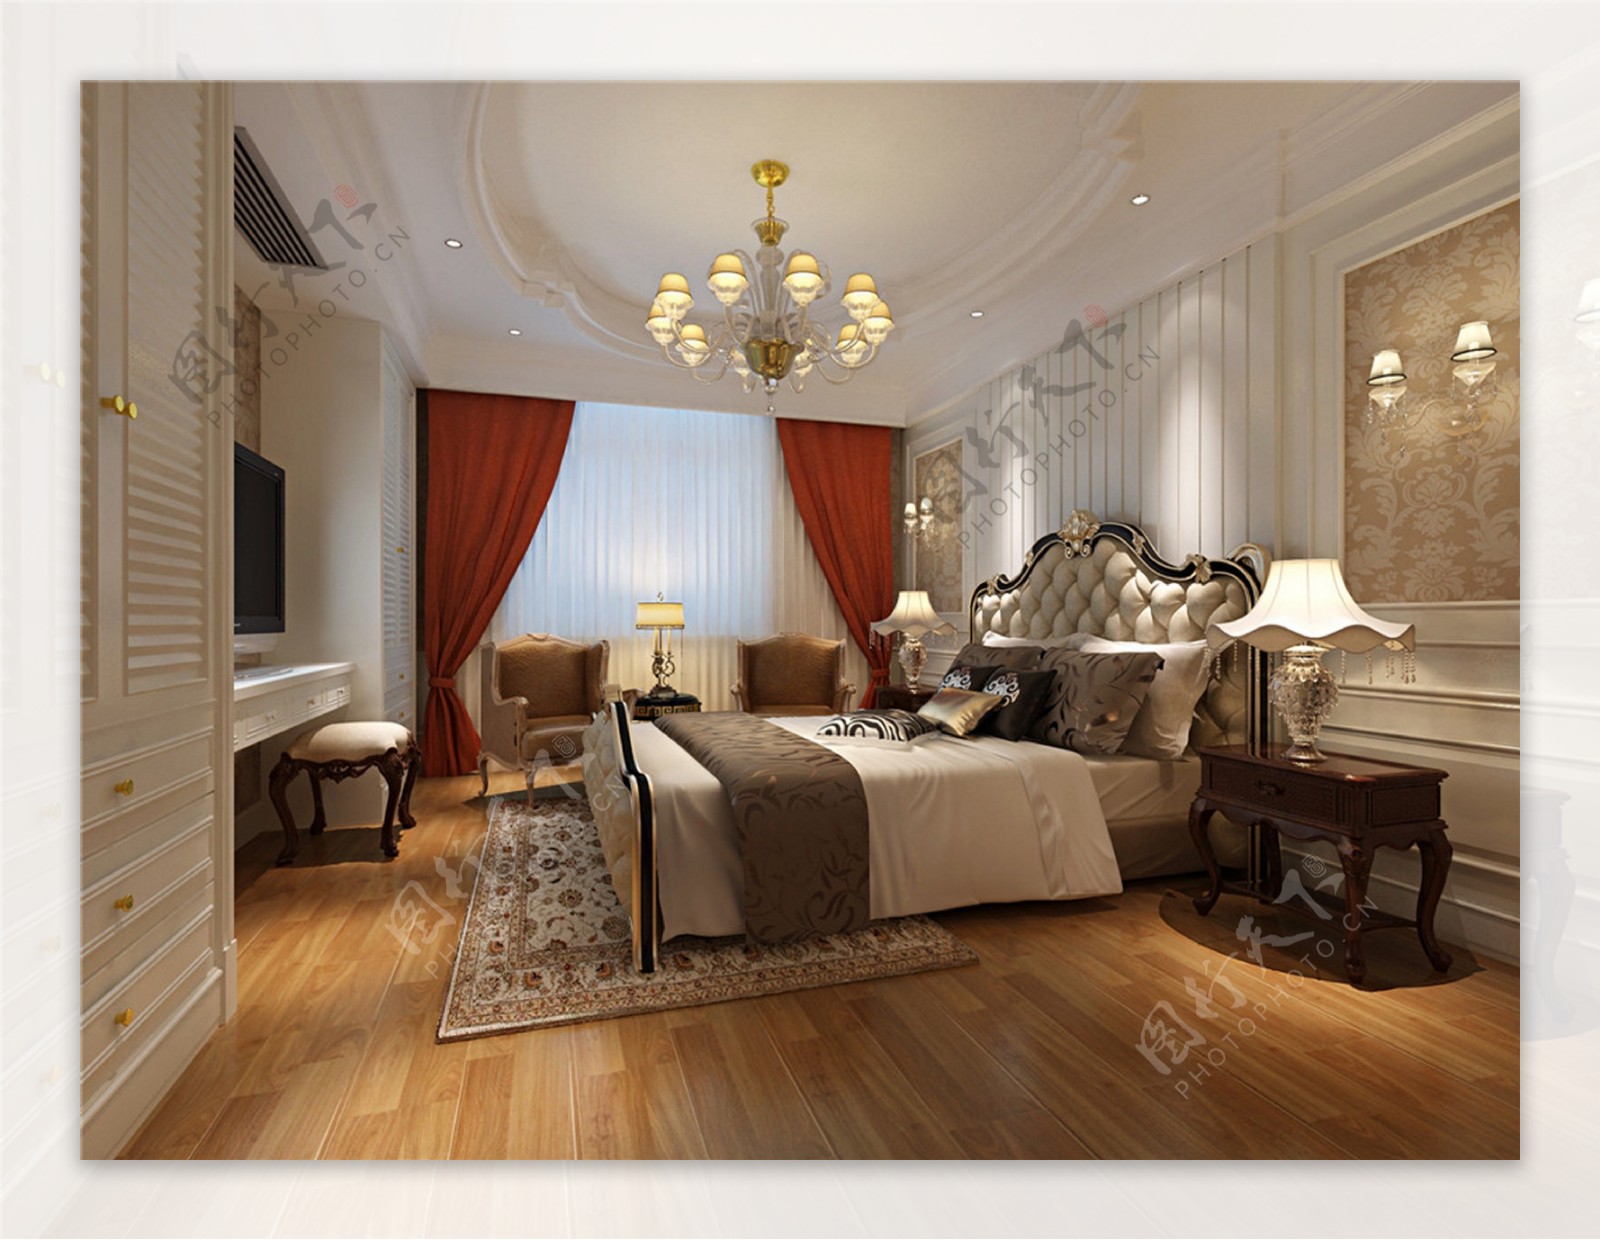 欧式时尚卧室大床落地窗设计图